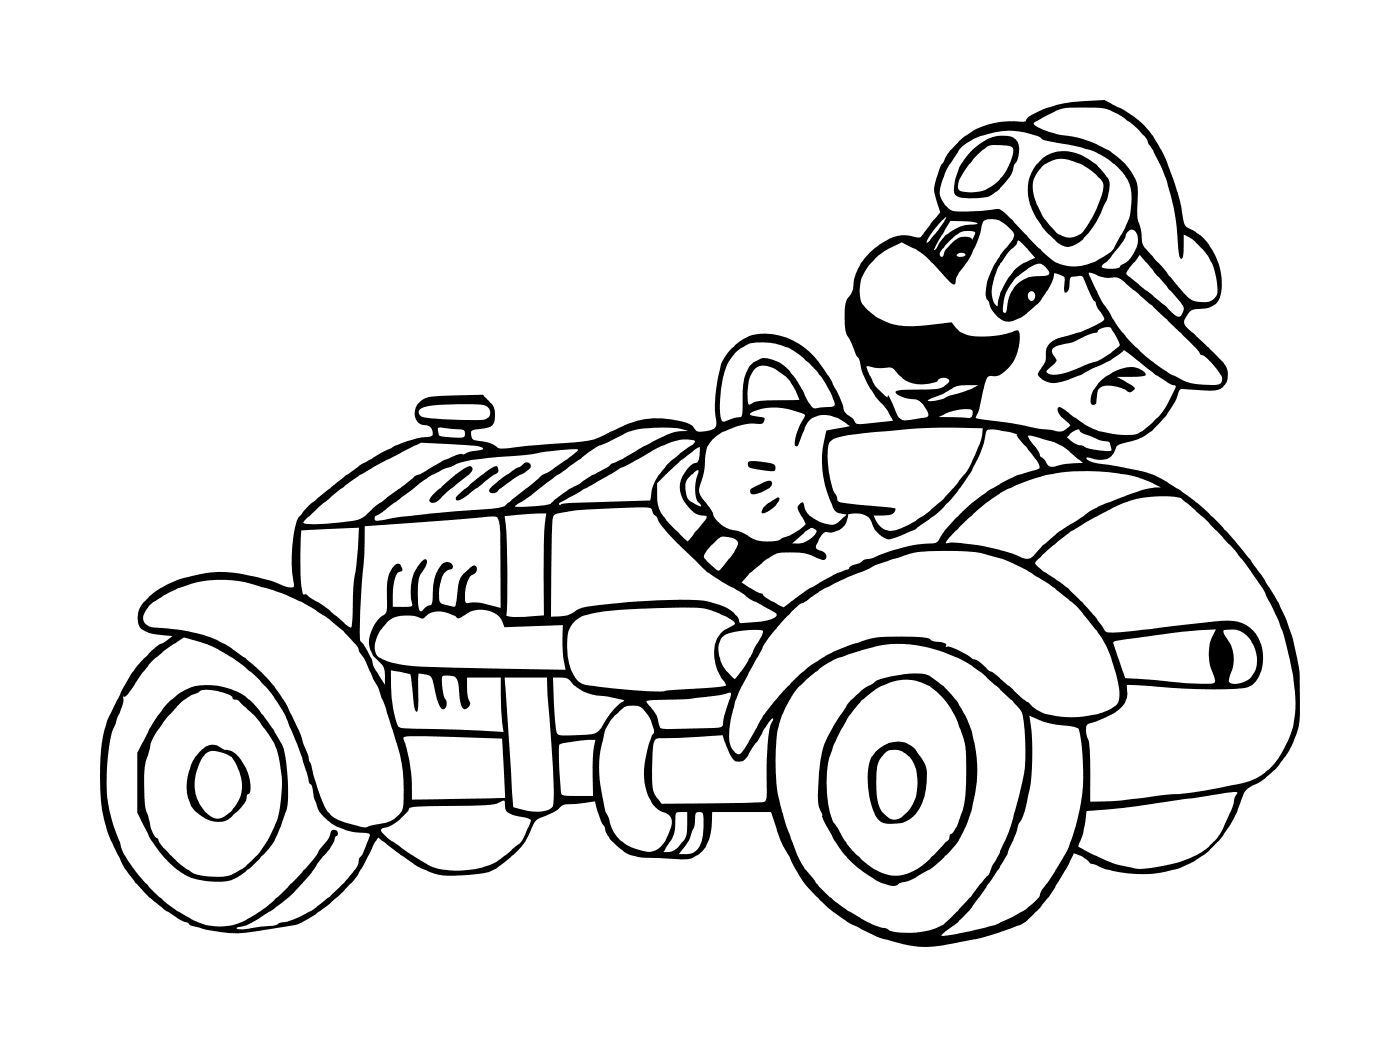   Mario Kart, une ancienne voiture 